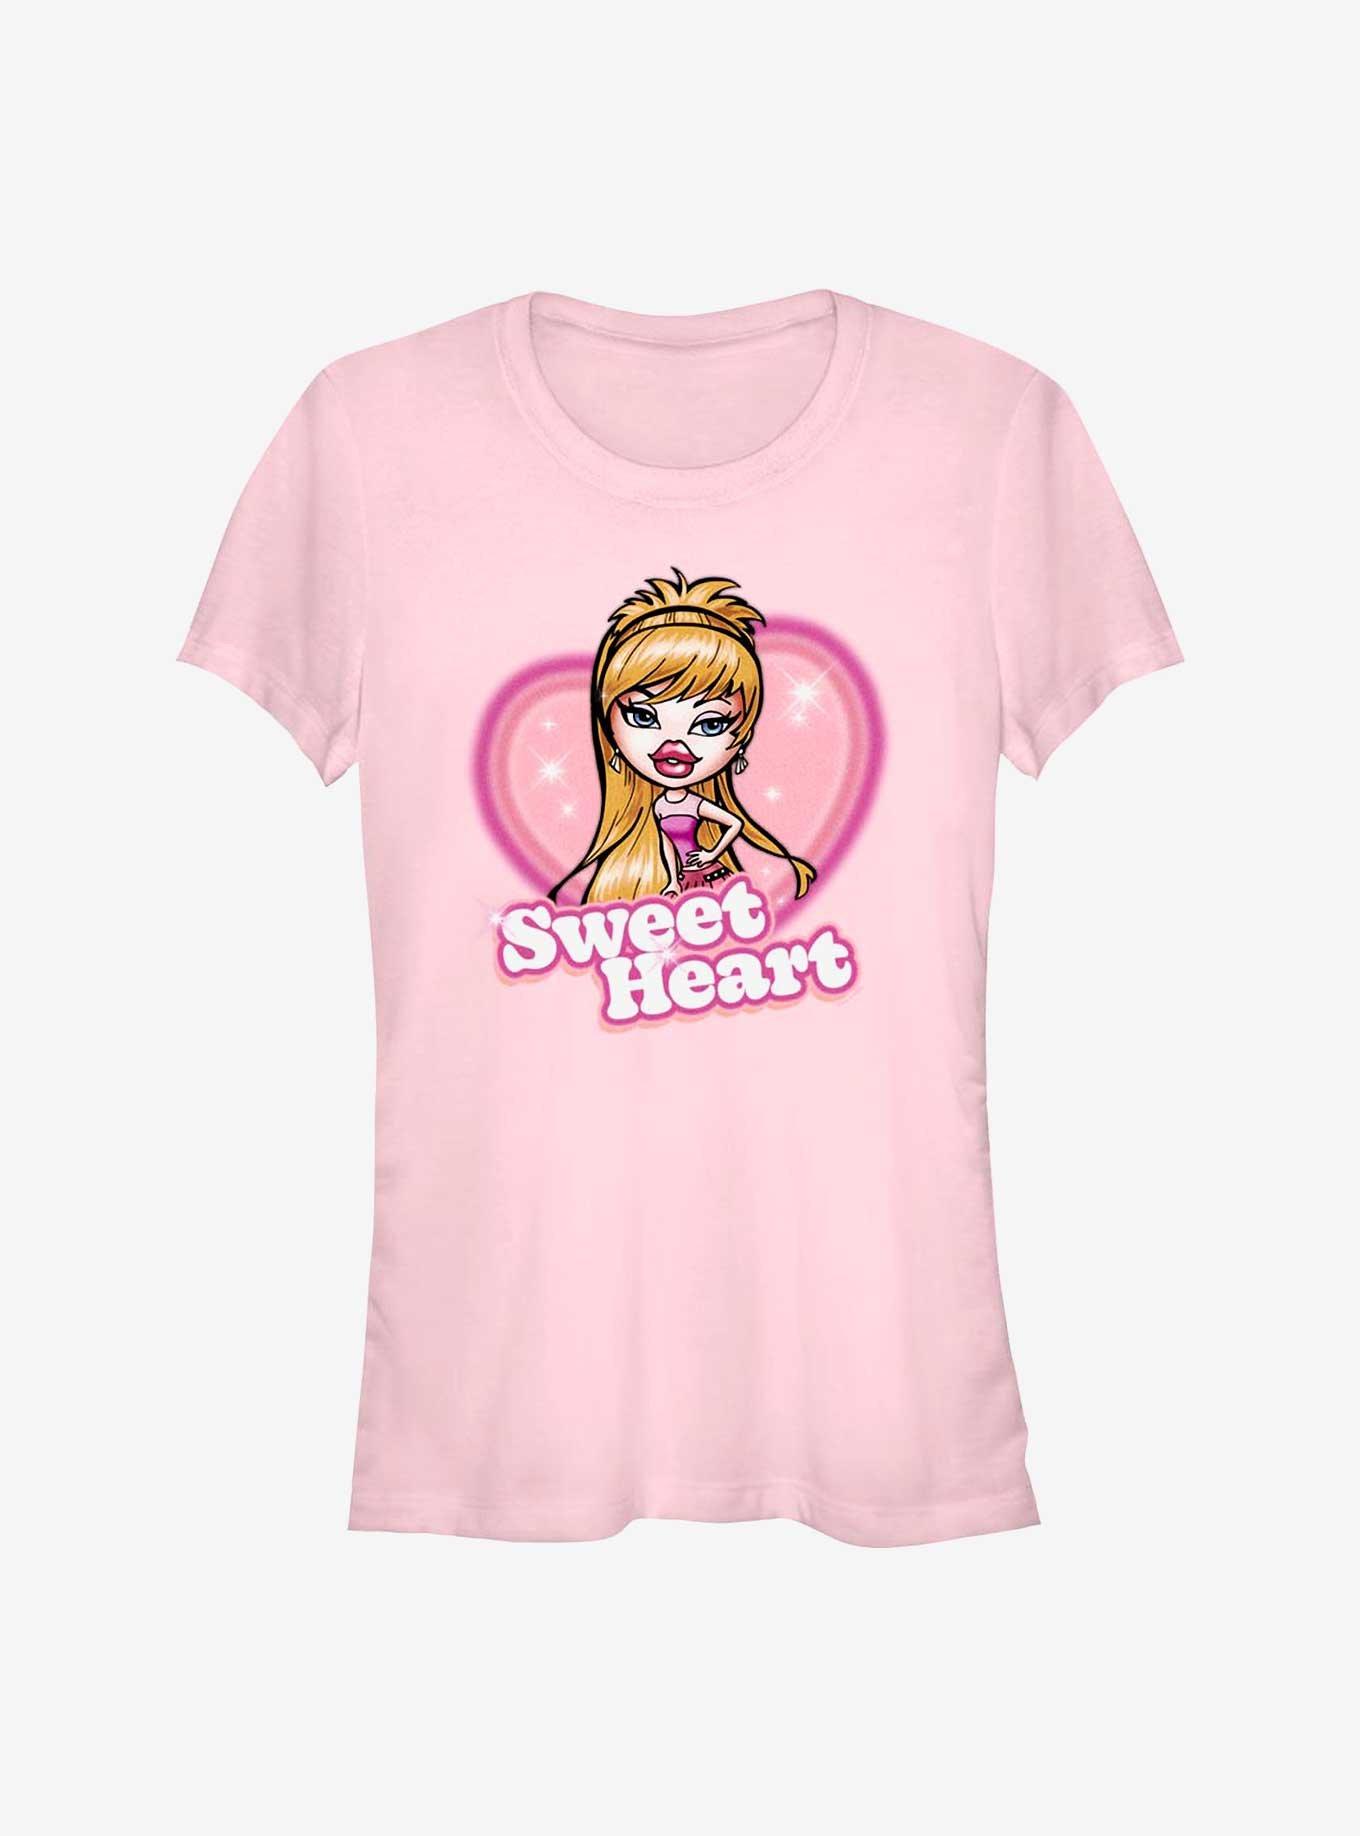 Bratz Chloe Sweet Heart Girls T-Shirt, LIGHT PINK, hi-res